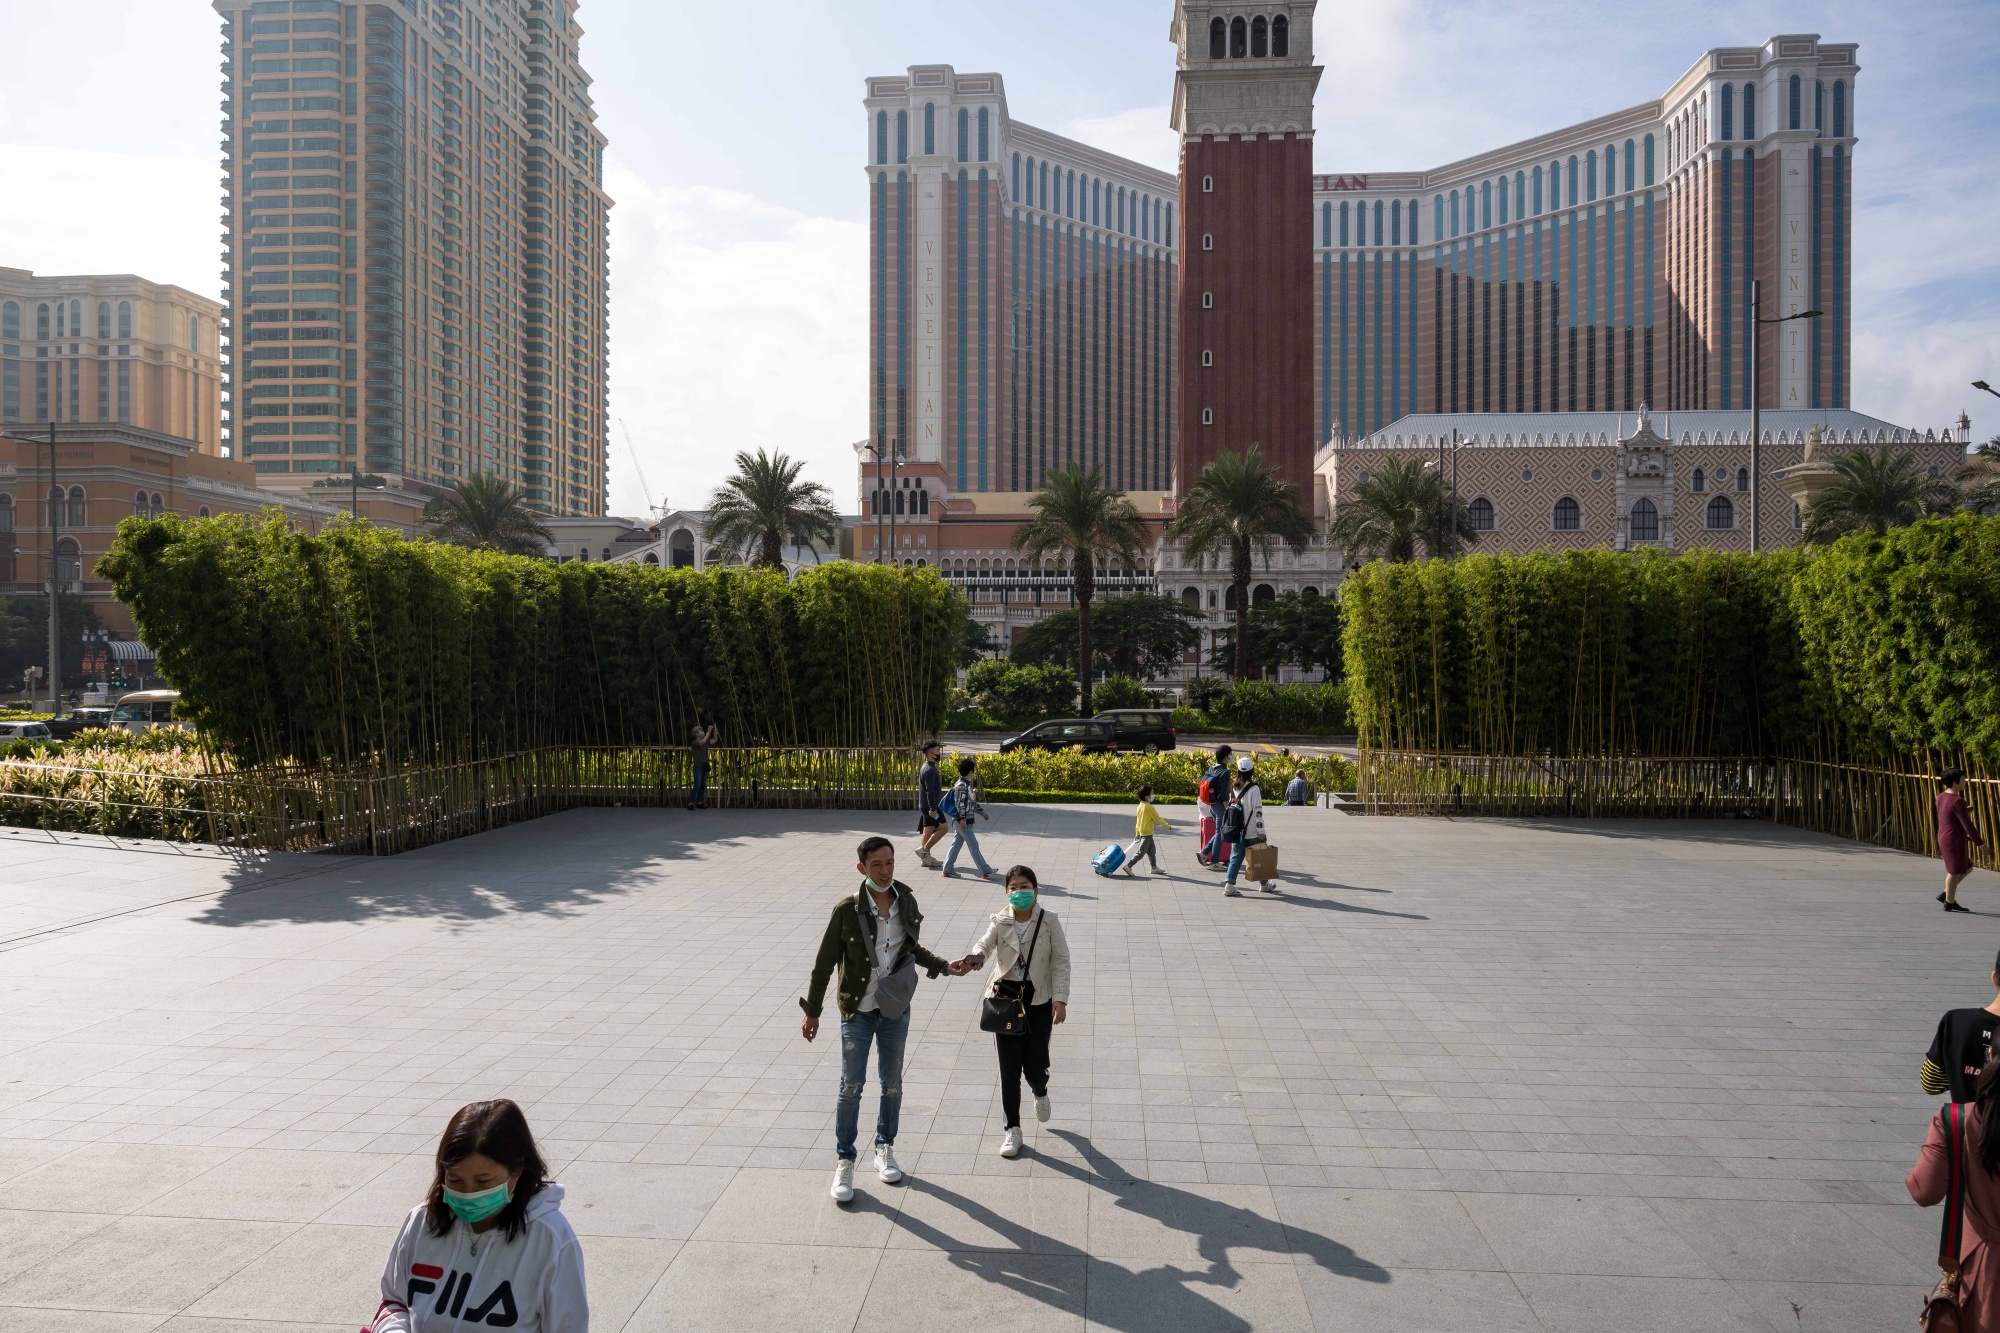 Las Vegas Sands Sees Macau Tourism Recovery Revenue Boost